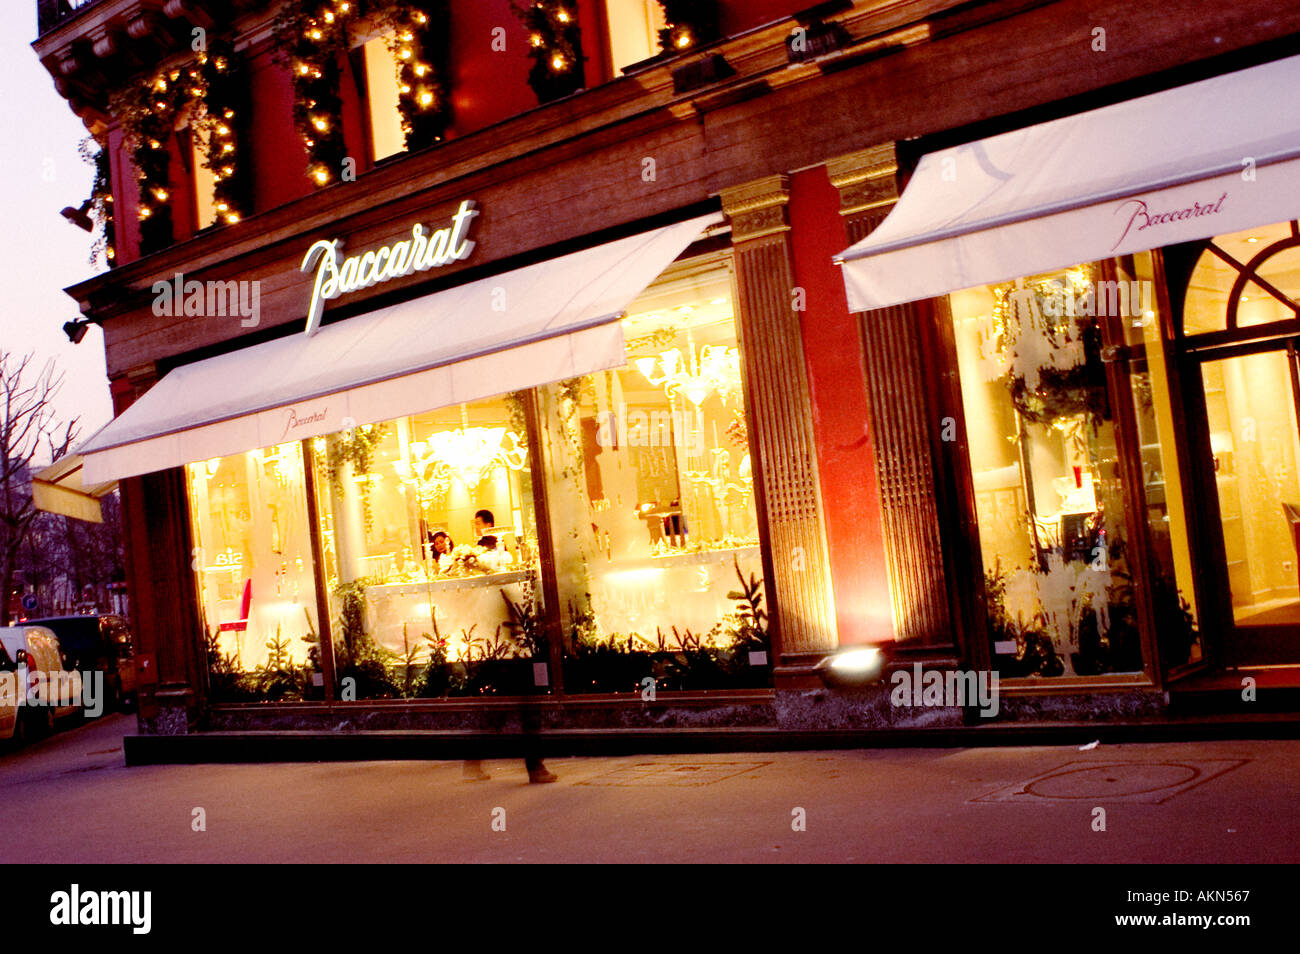 Paris Francia, Tiendas de lujo Baccarat Crystal, frente a la tienda Storefront Foto de stock